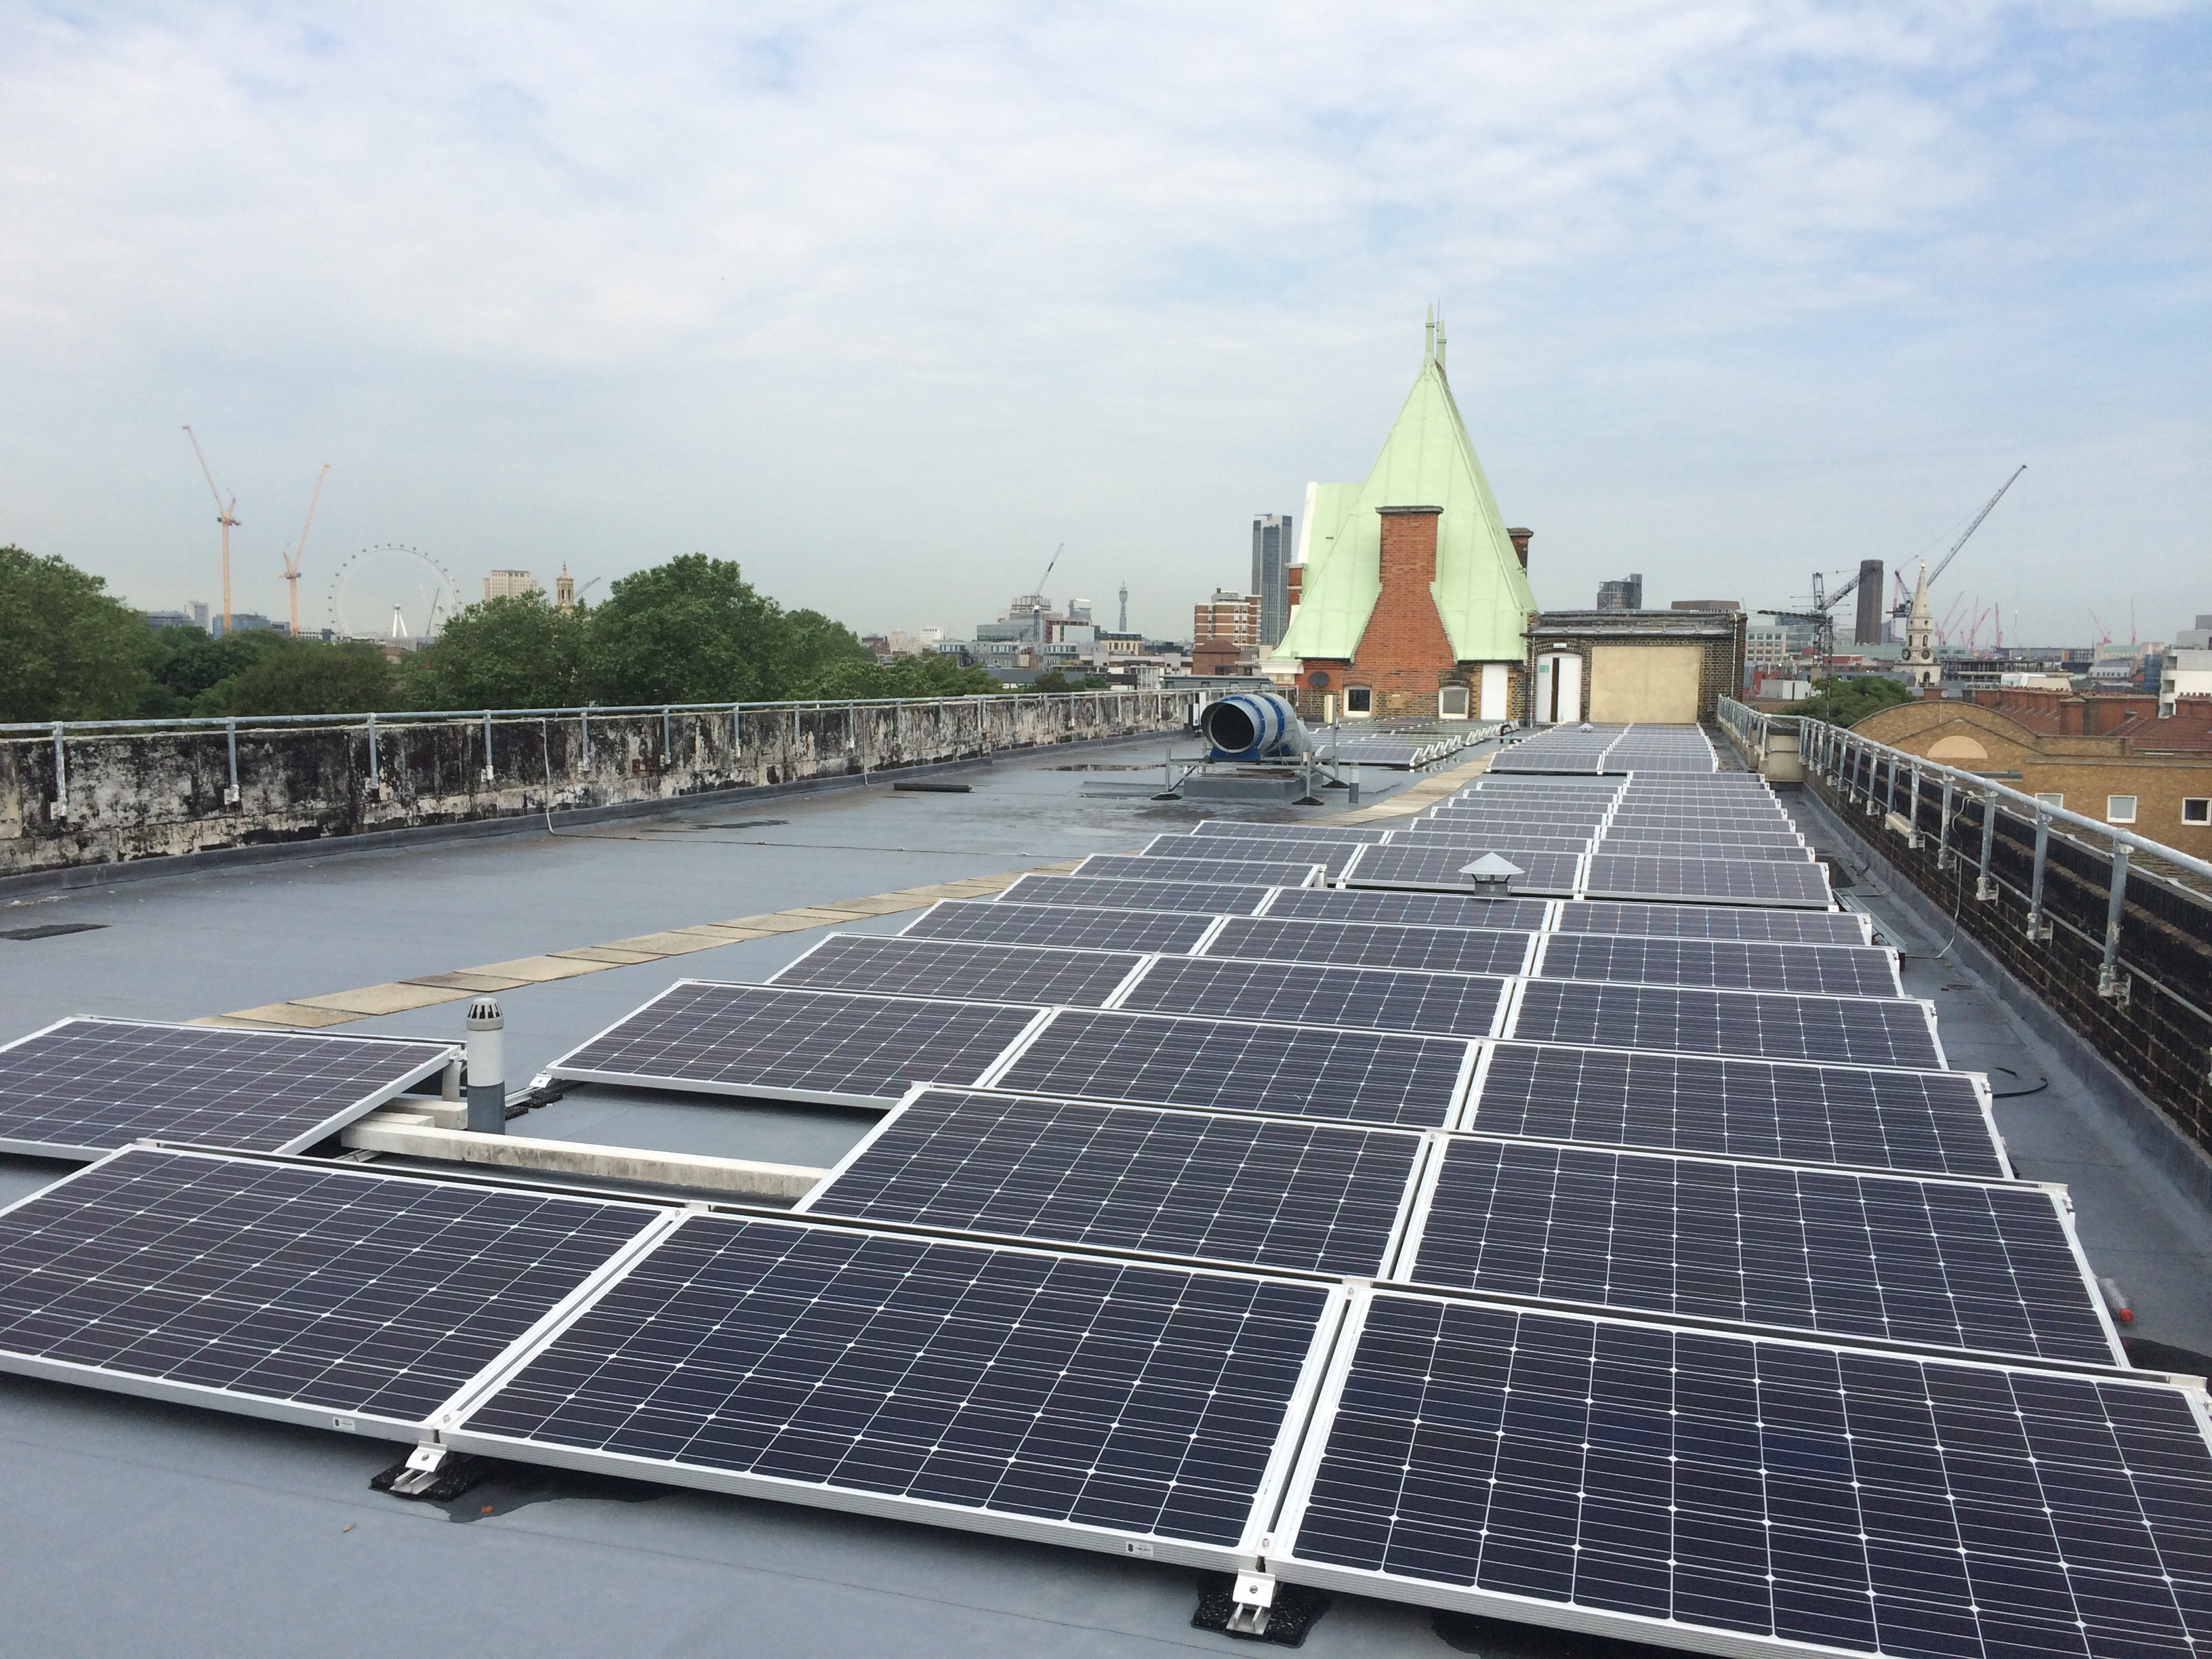 Solar panels on the roof of GDSA